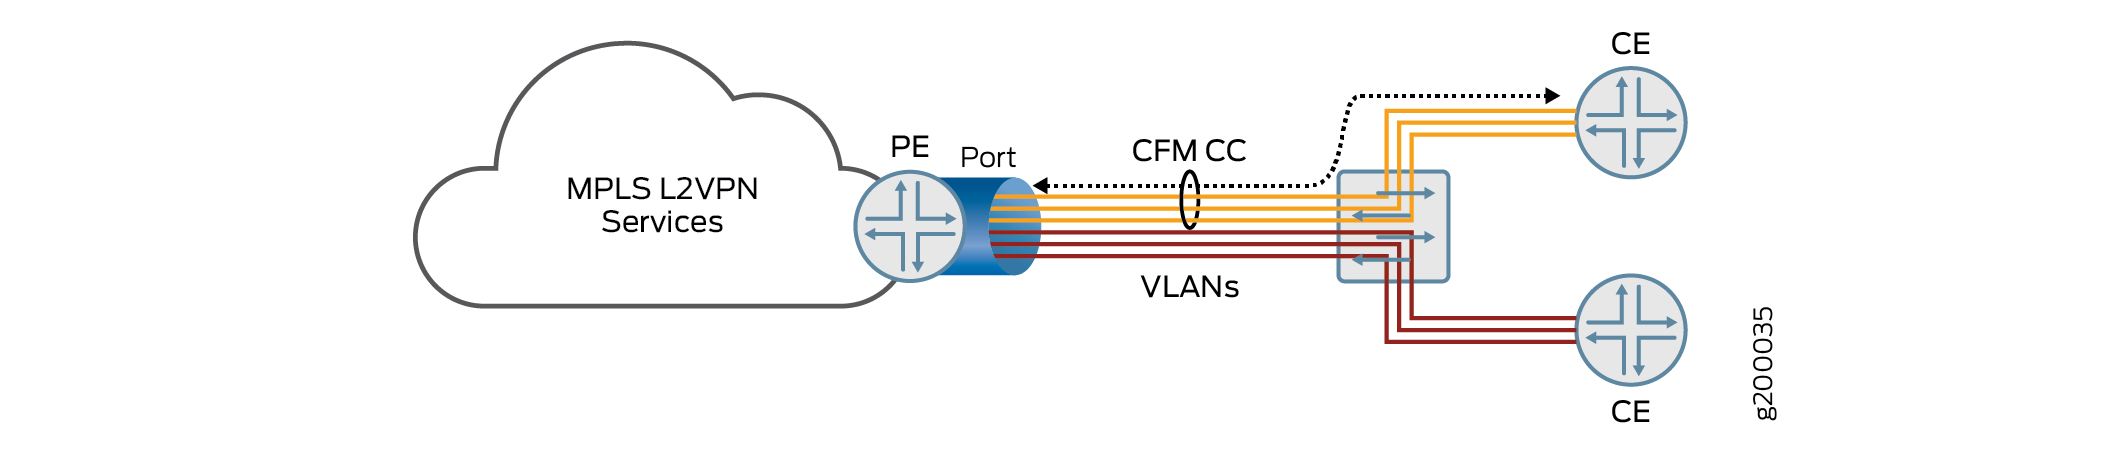 Topologie mehrerer VLAN-Dienste, die einen einzigen Port auf PE-Router teilen Bestimmt für mehrere CE-Router